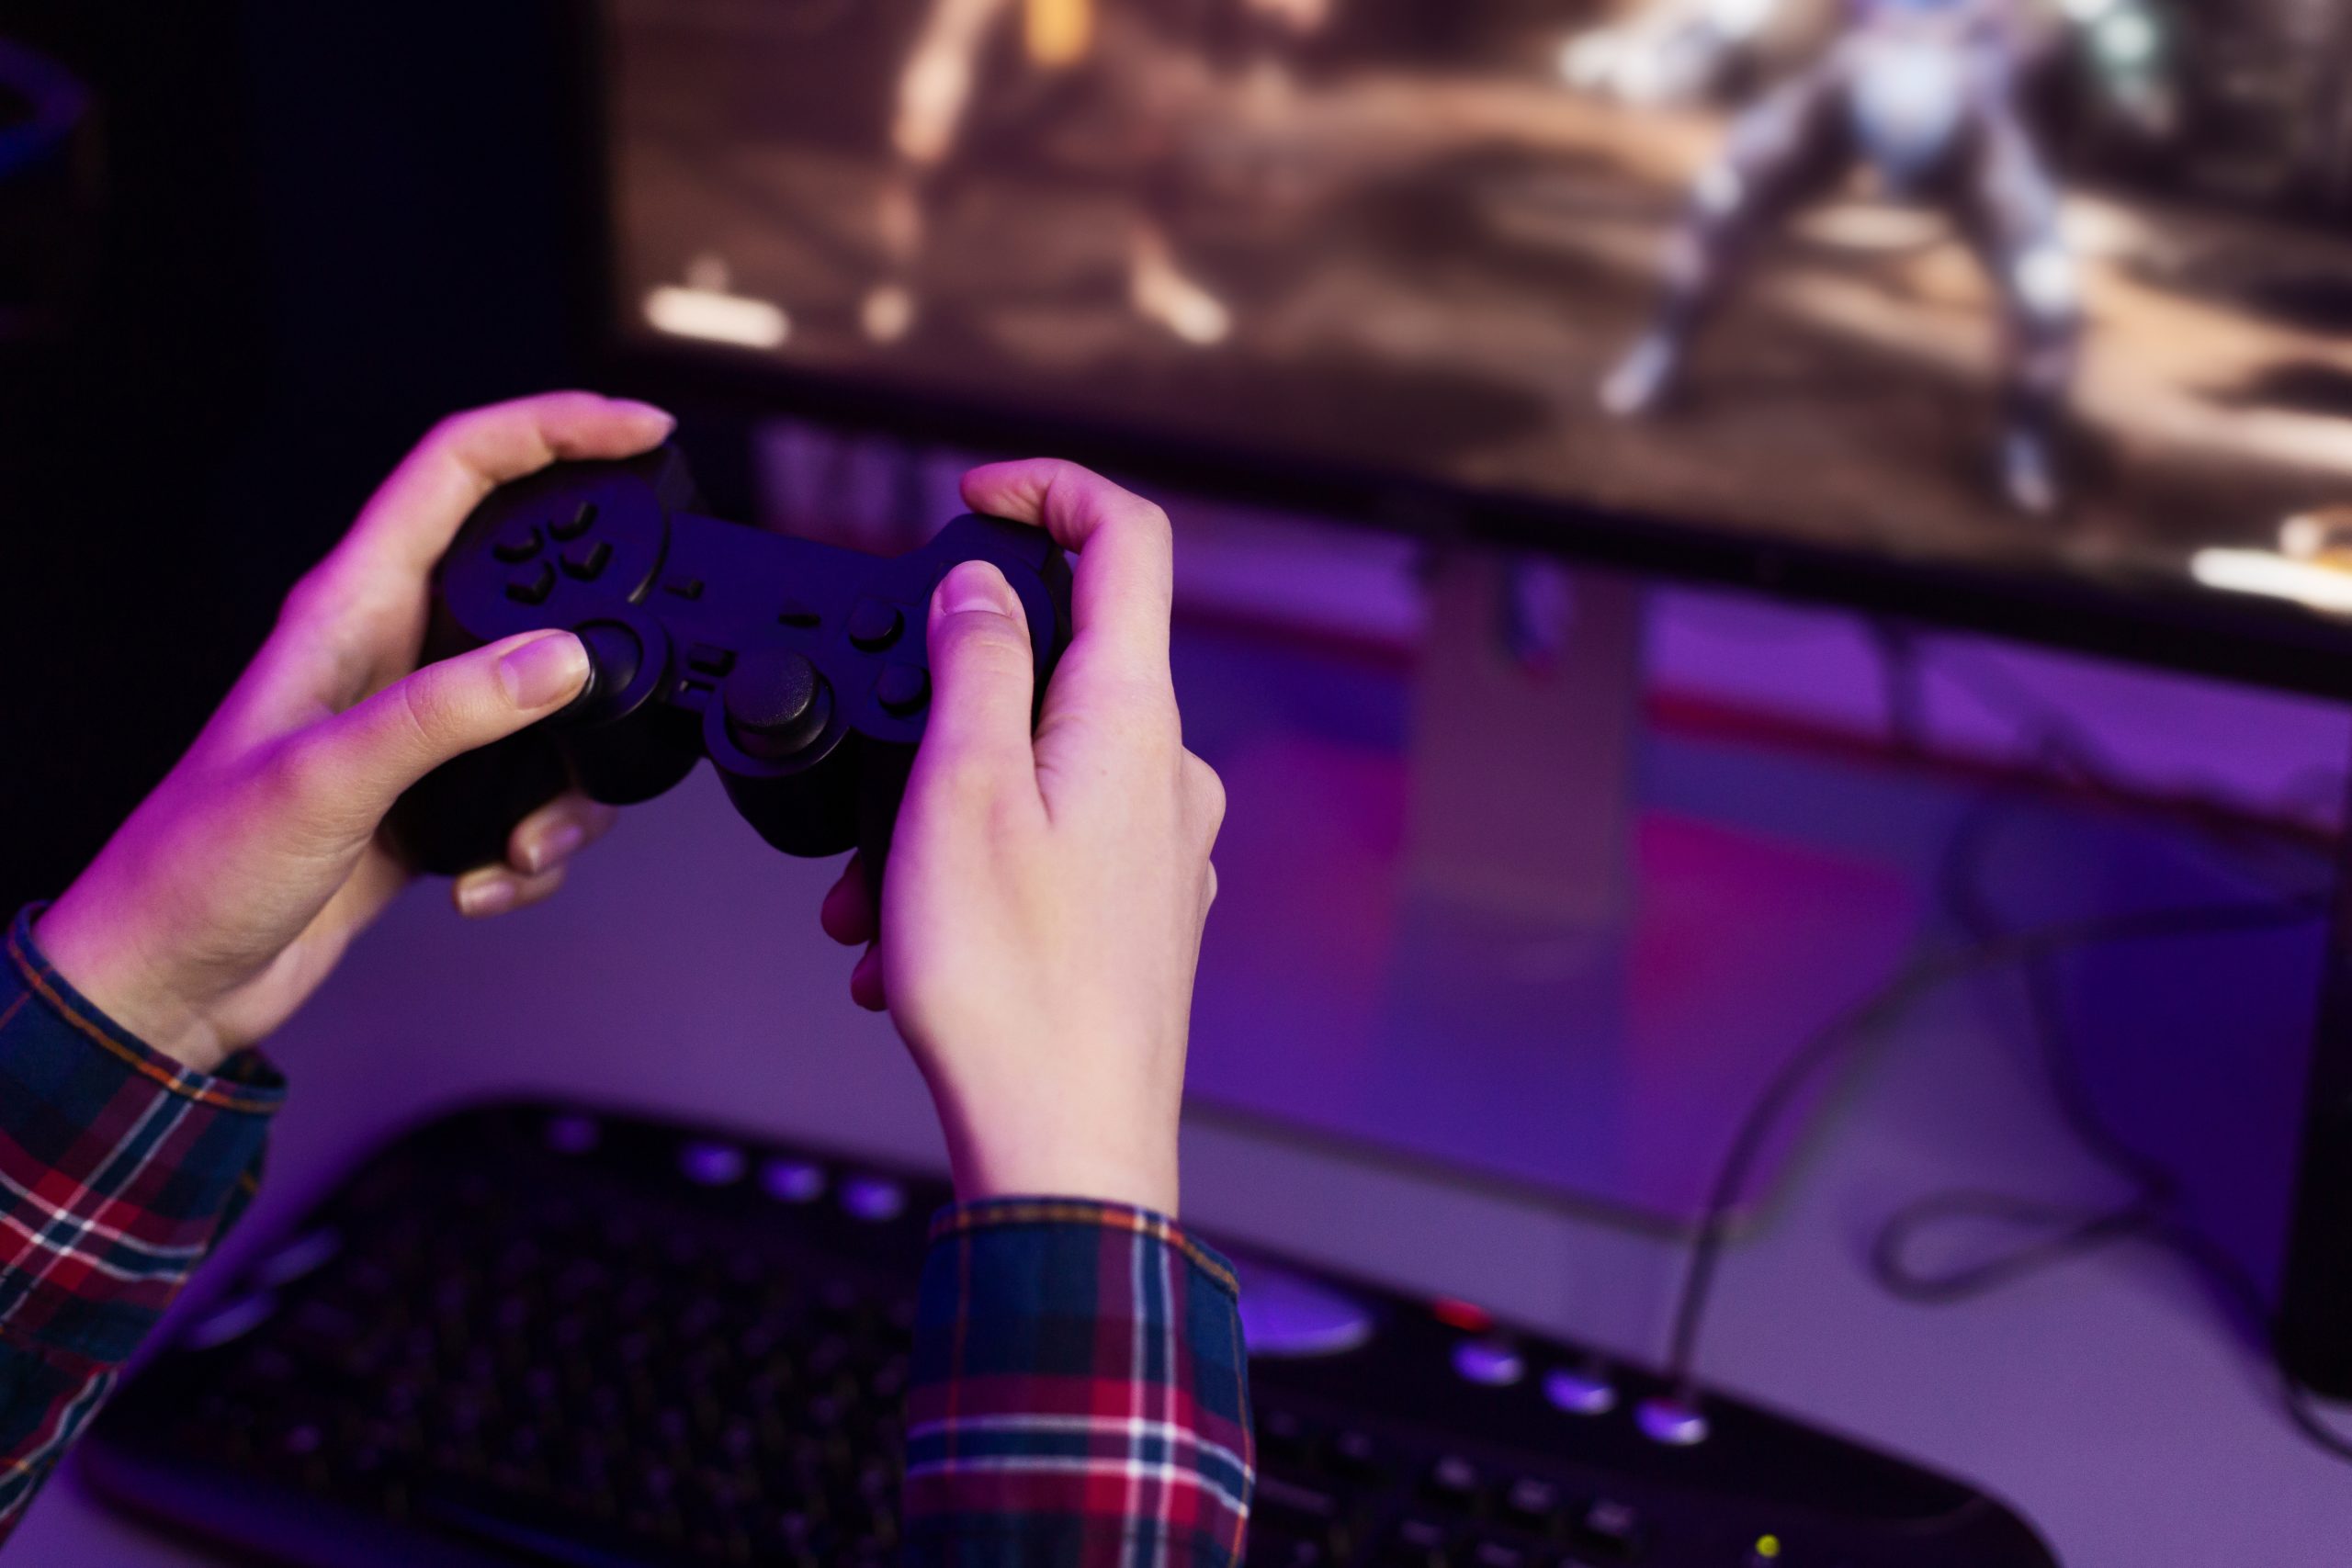 Microsoft firma un acuerdo con Boosteroid para llevar sus juegos